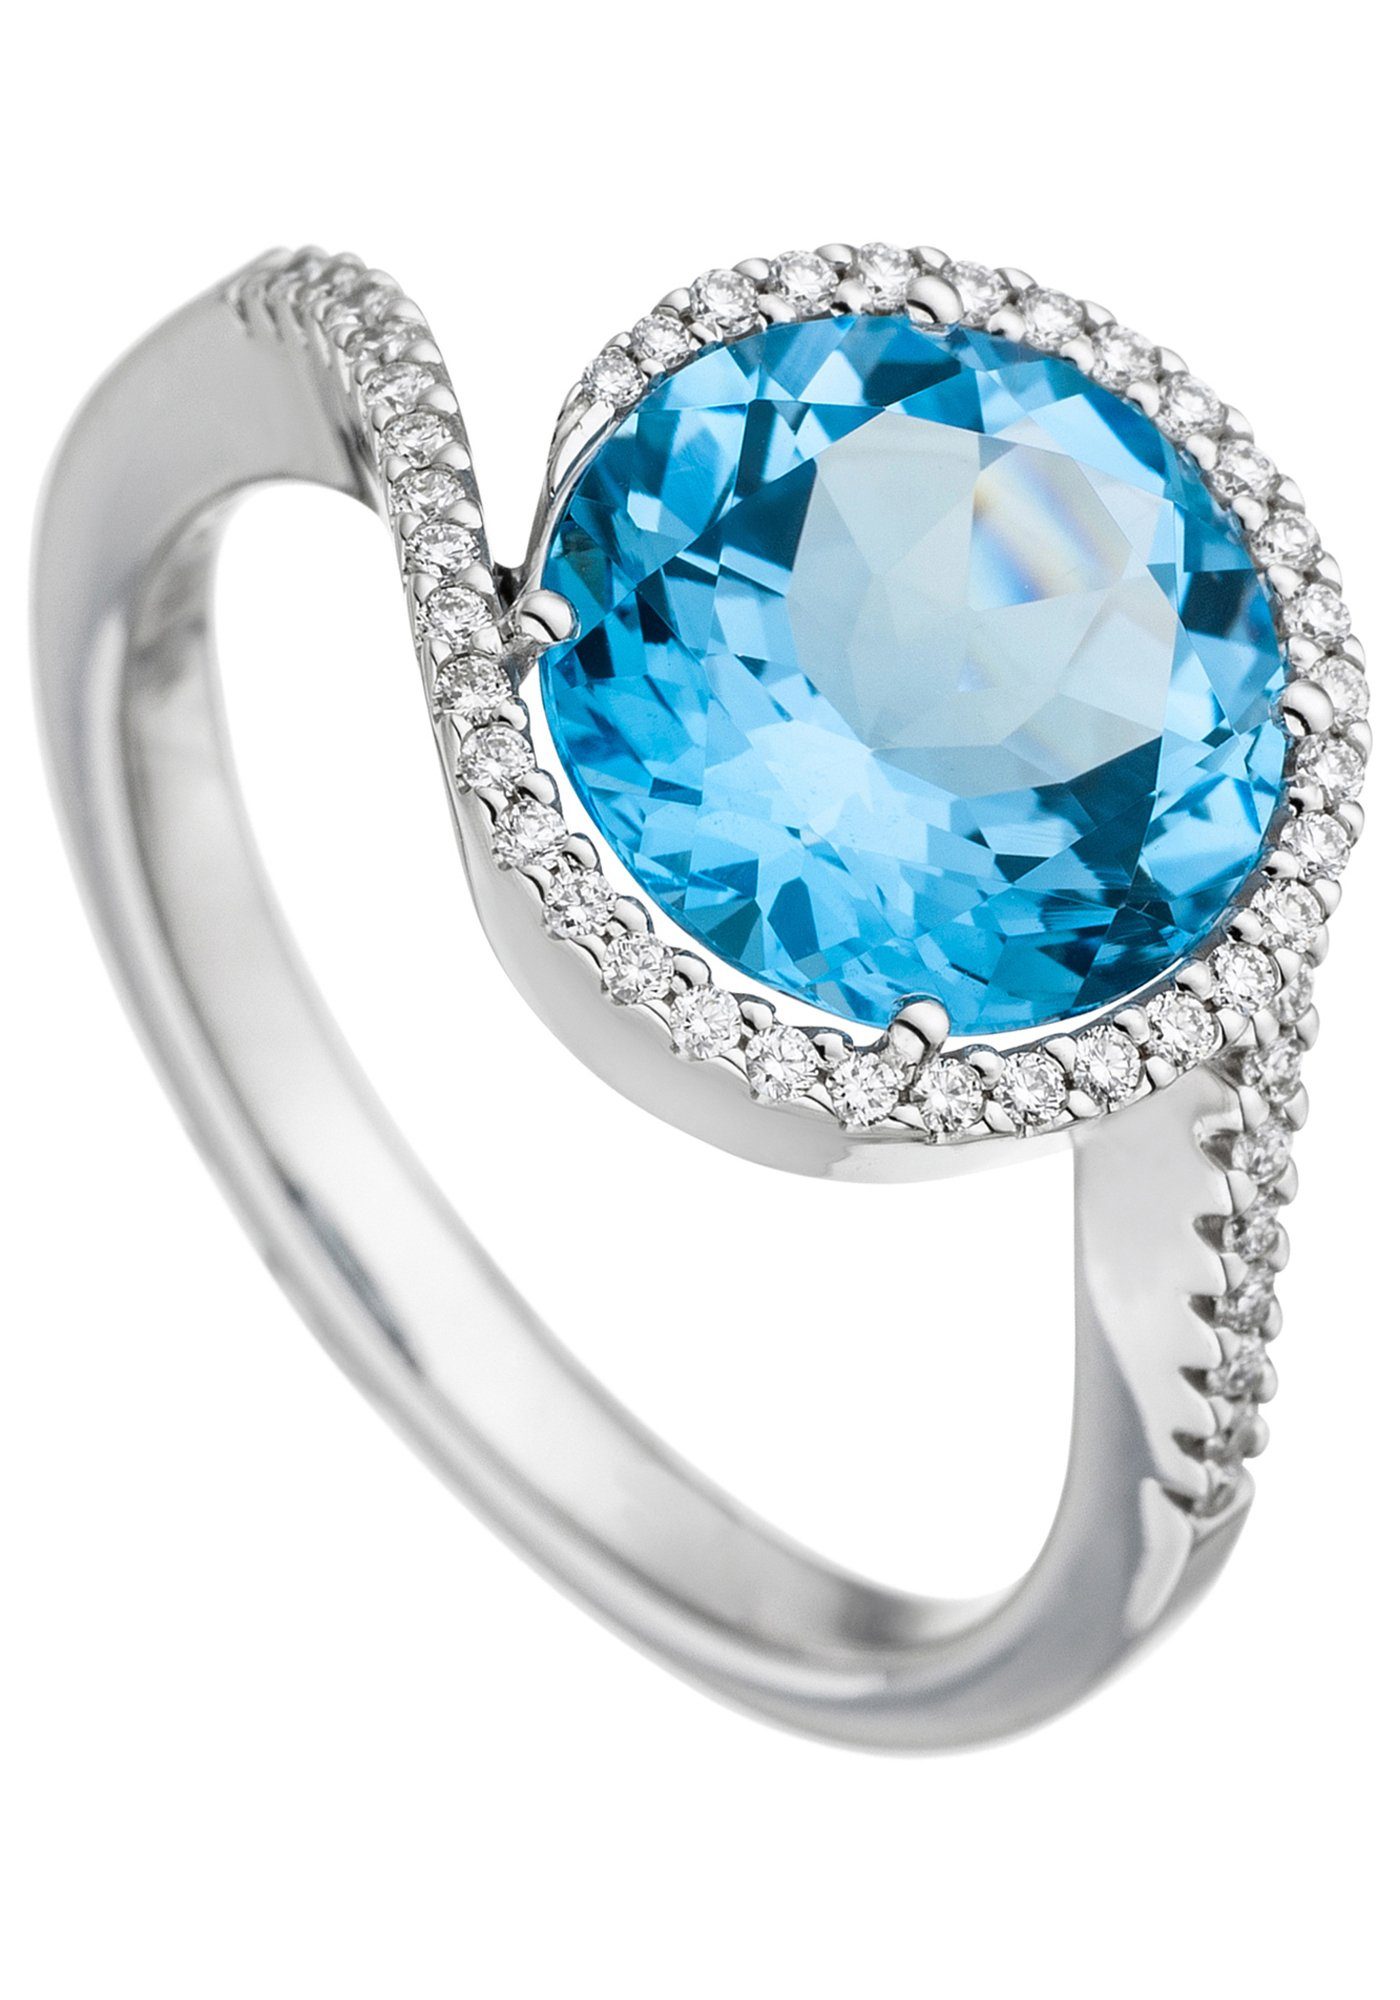 JOBO Fingerring Ring mit Blautopas und 47 Diamanten, 585 Weißgold